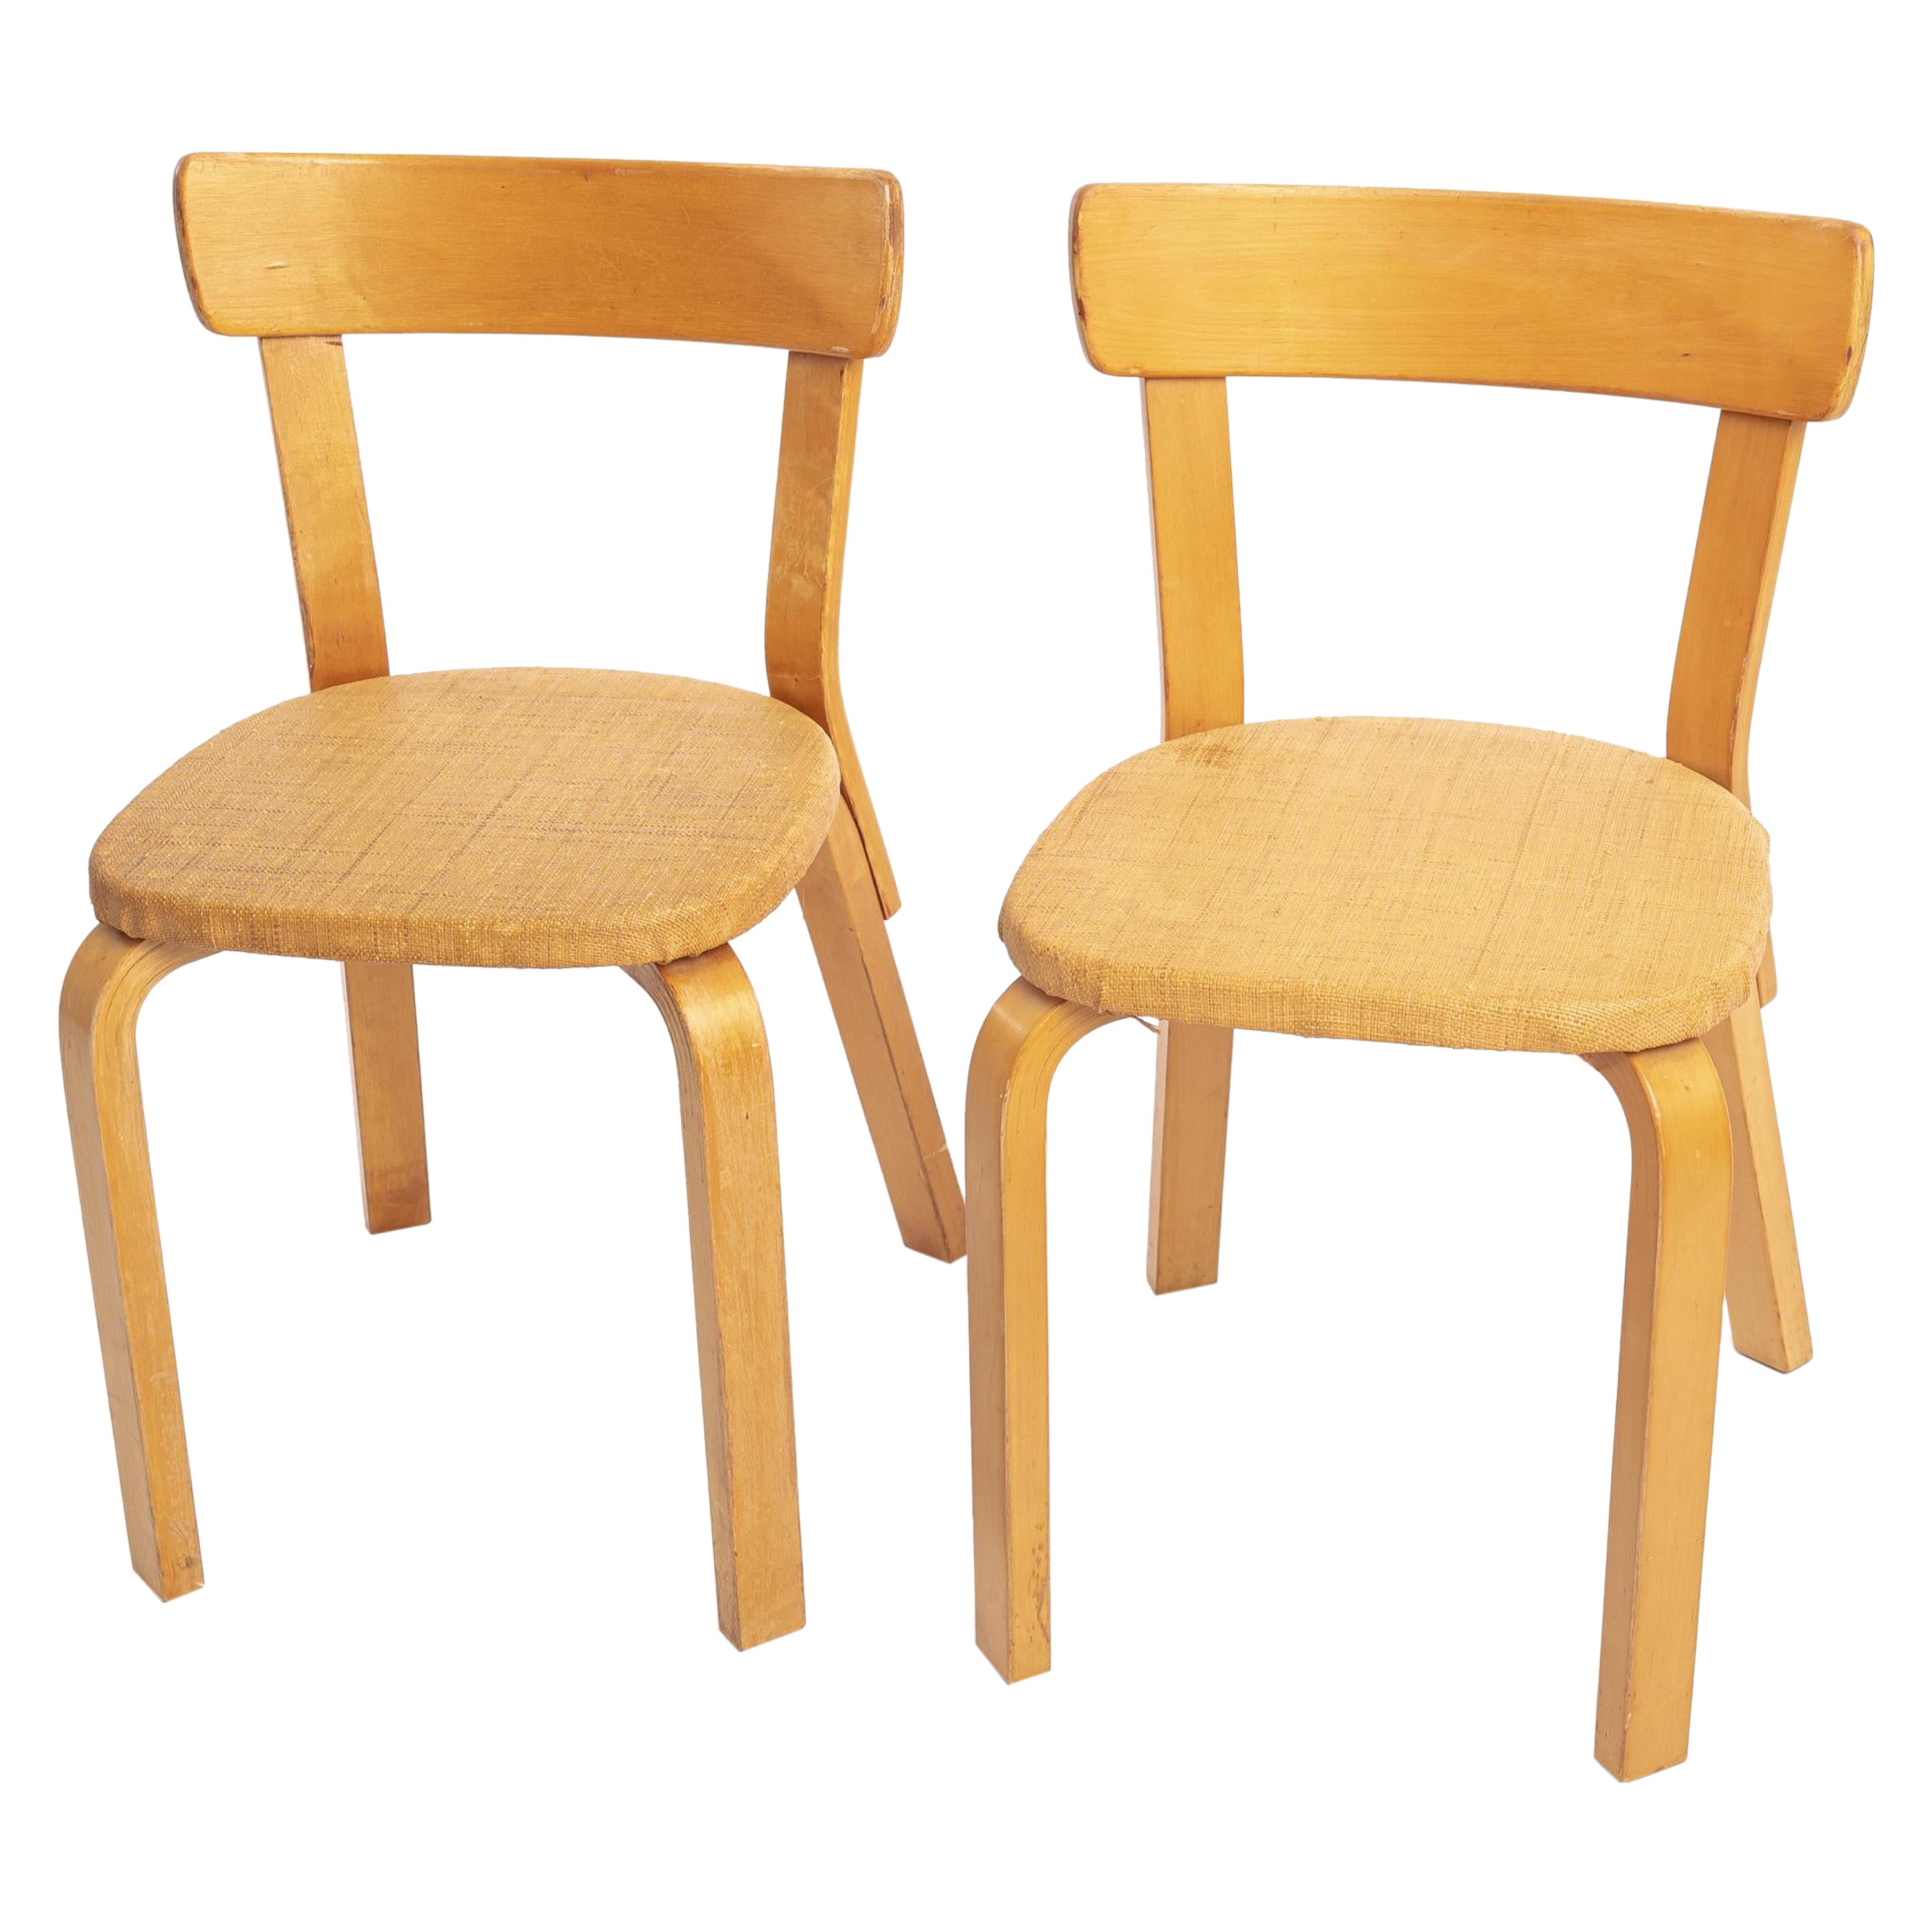 Alvar Aalto chairs model 69 2 pcs